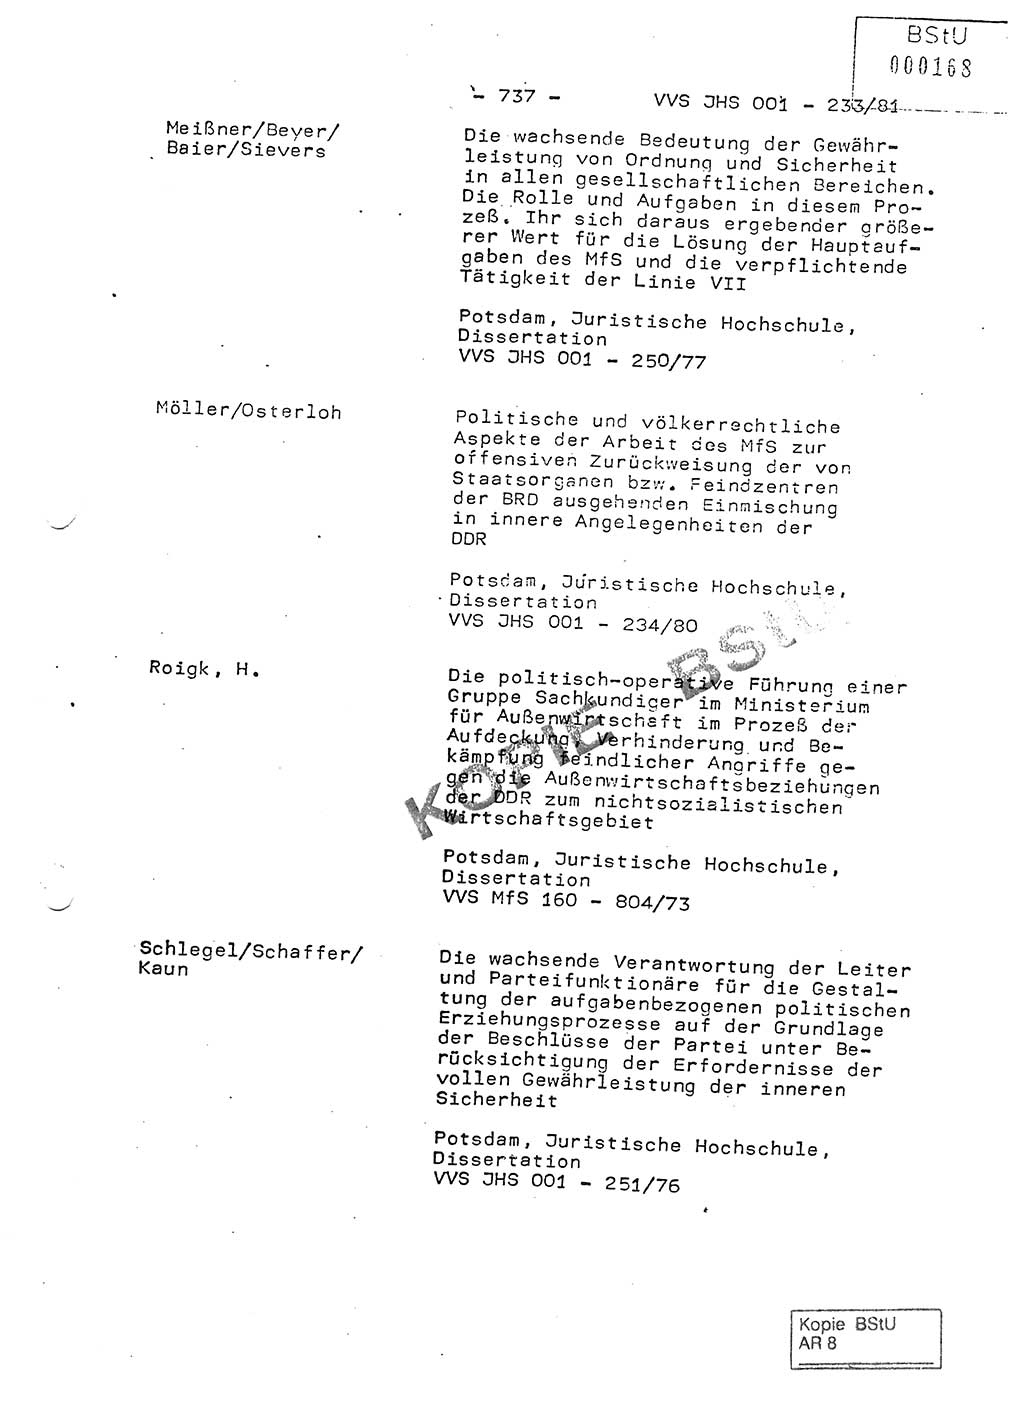 Dissertation Oberstleutnant Horst Zank (JHS), Oberstleutnant Dr. Karl-Heinz Knoblauch (JHS), Oberstleutnant Gustav-Adolf Kowalewski (HA Ⅸ), Oberstleutnant Wolfgang Plötner (HA Ⅸ), Ministerium für Staatssicherheit (MfS) [Deutsche Demokratische Republik (DDR)], Juristische Hochschule (JHS), Vertrauliche Verschlußsache (VVS) o001-233/81, Potsdam 1981, Blatt 737 (Diss. MfS DDR JHS VVS o001-233/81 1981, Bl. 737)